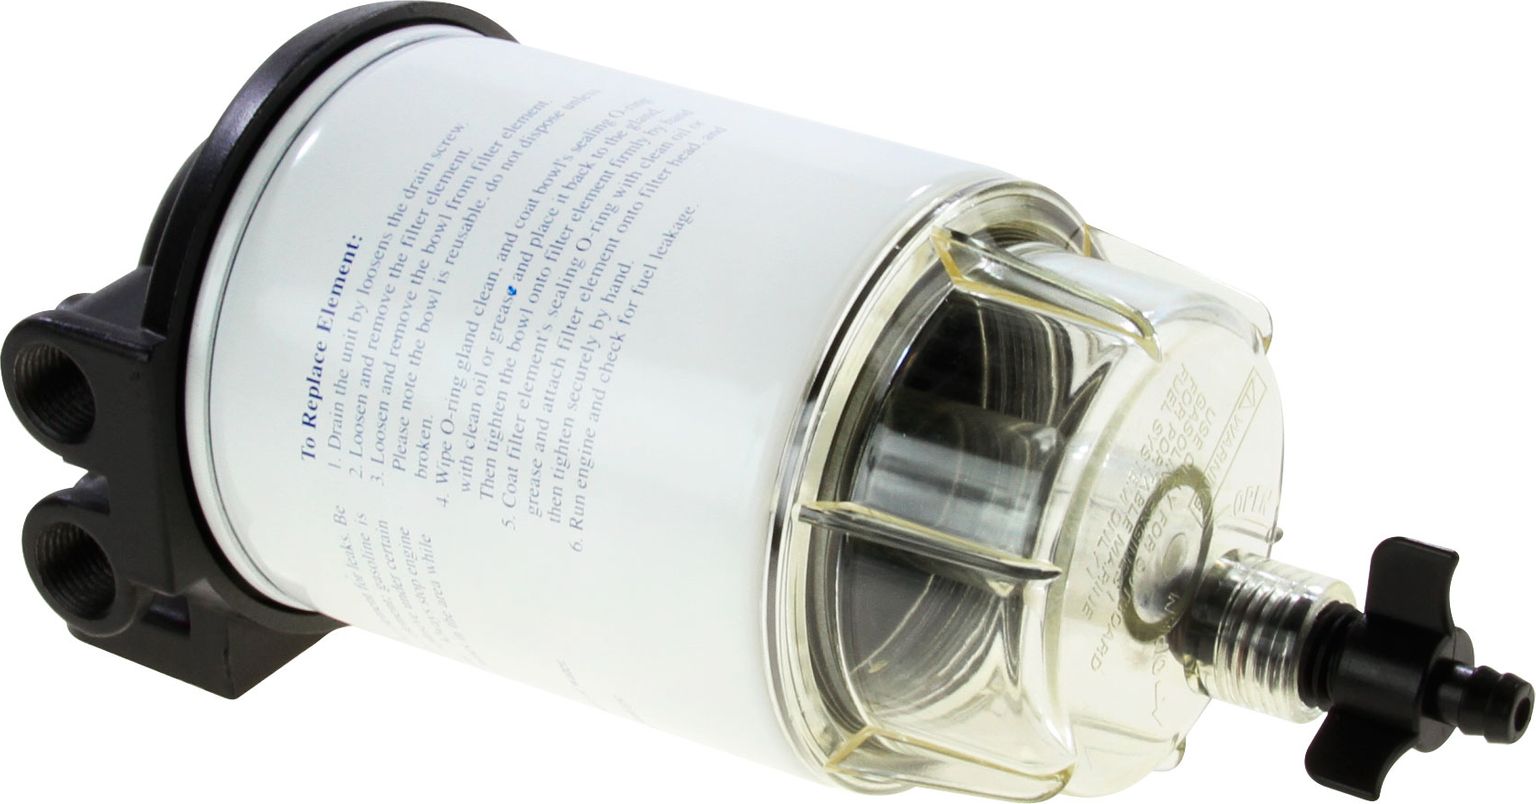 Фильтр топливный 10 мк с креплением и водосборником (малый) C14573P - фото 2